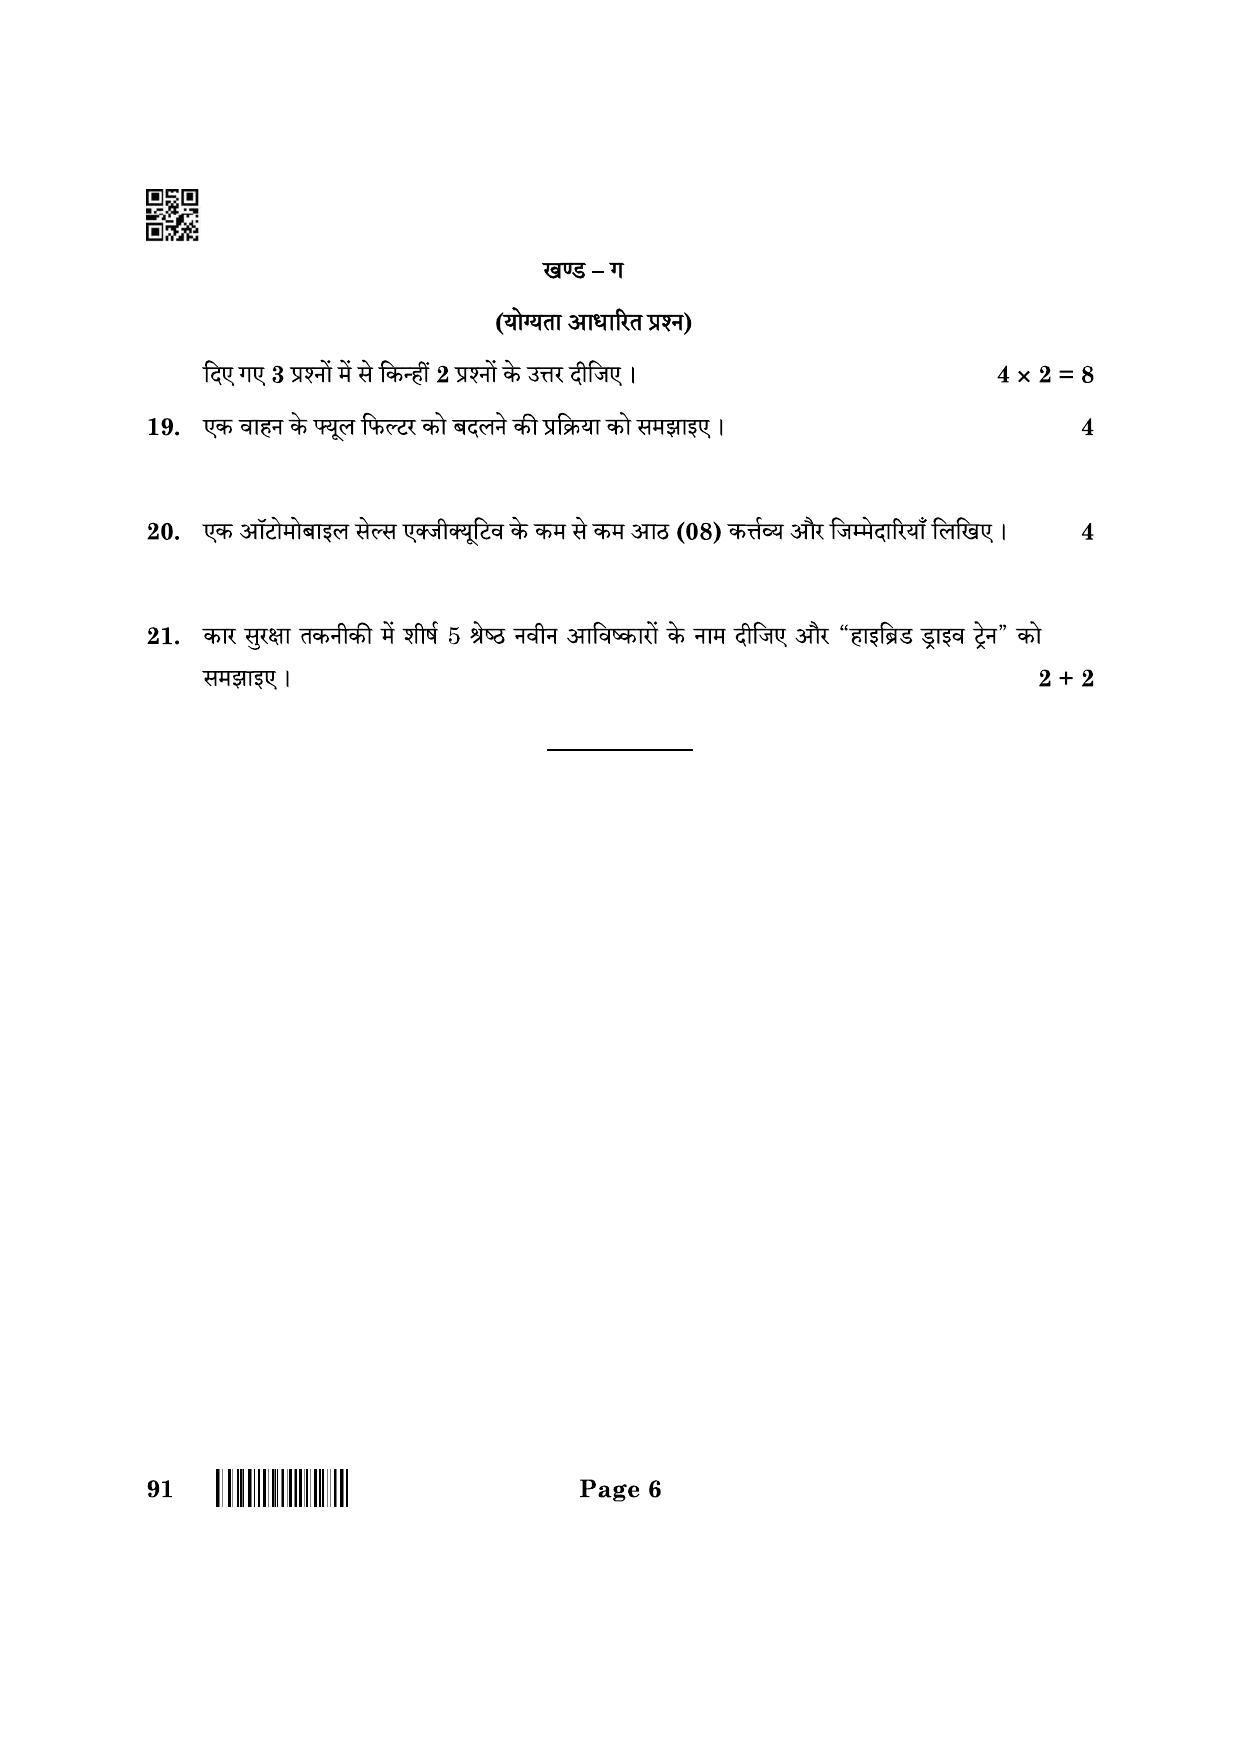 CBSE Class 10 91 Automotive 2022 Question Paper - Page 6